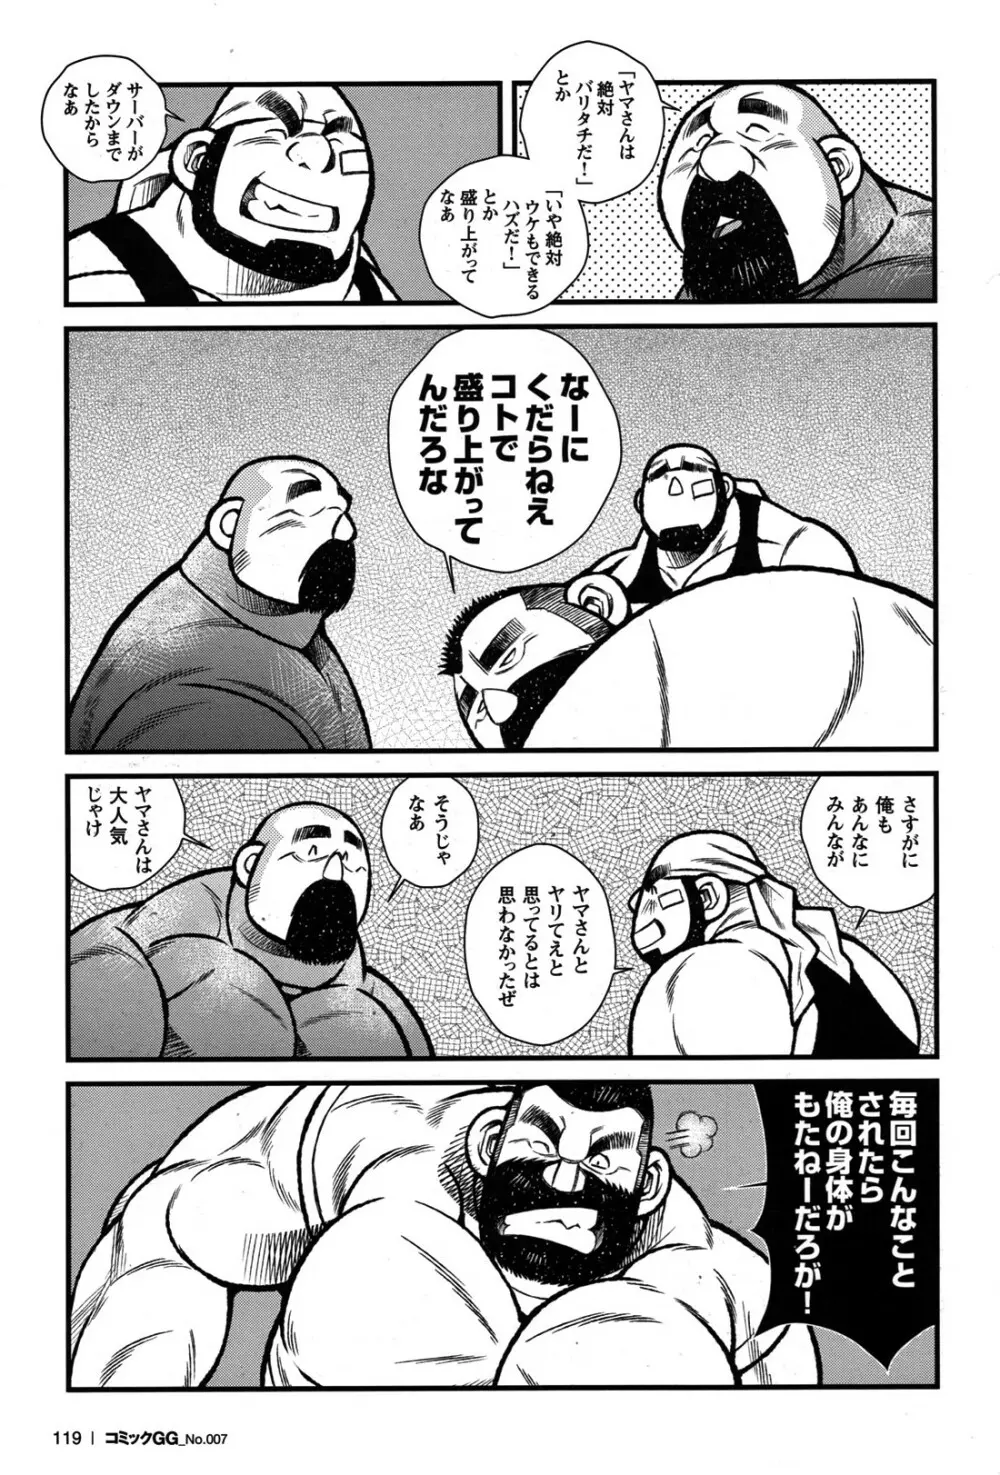 Comic G-men Gaho No.07 106ページ